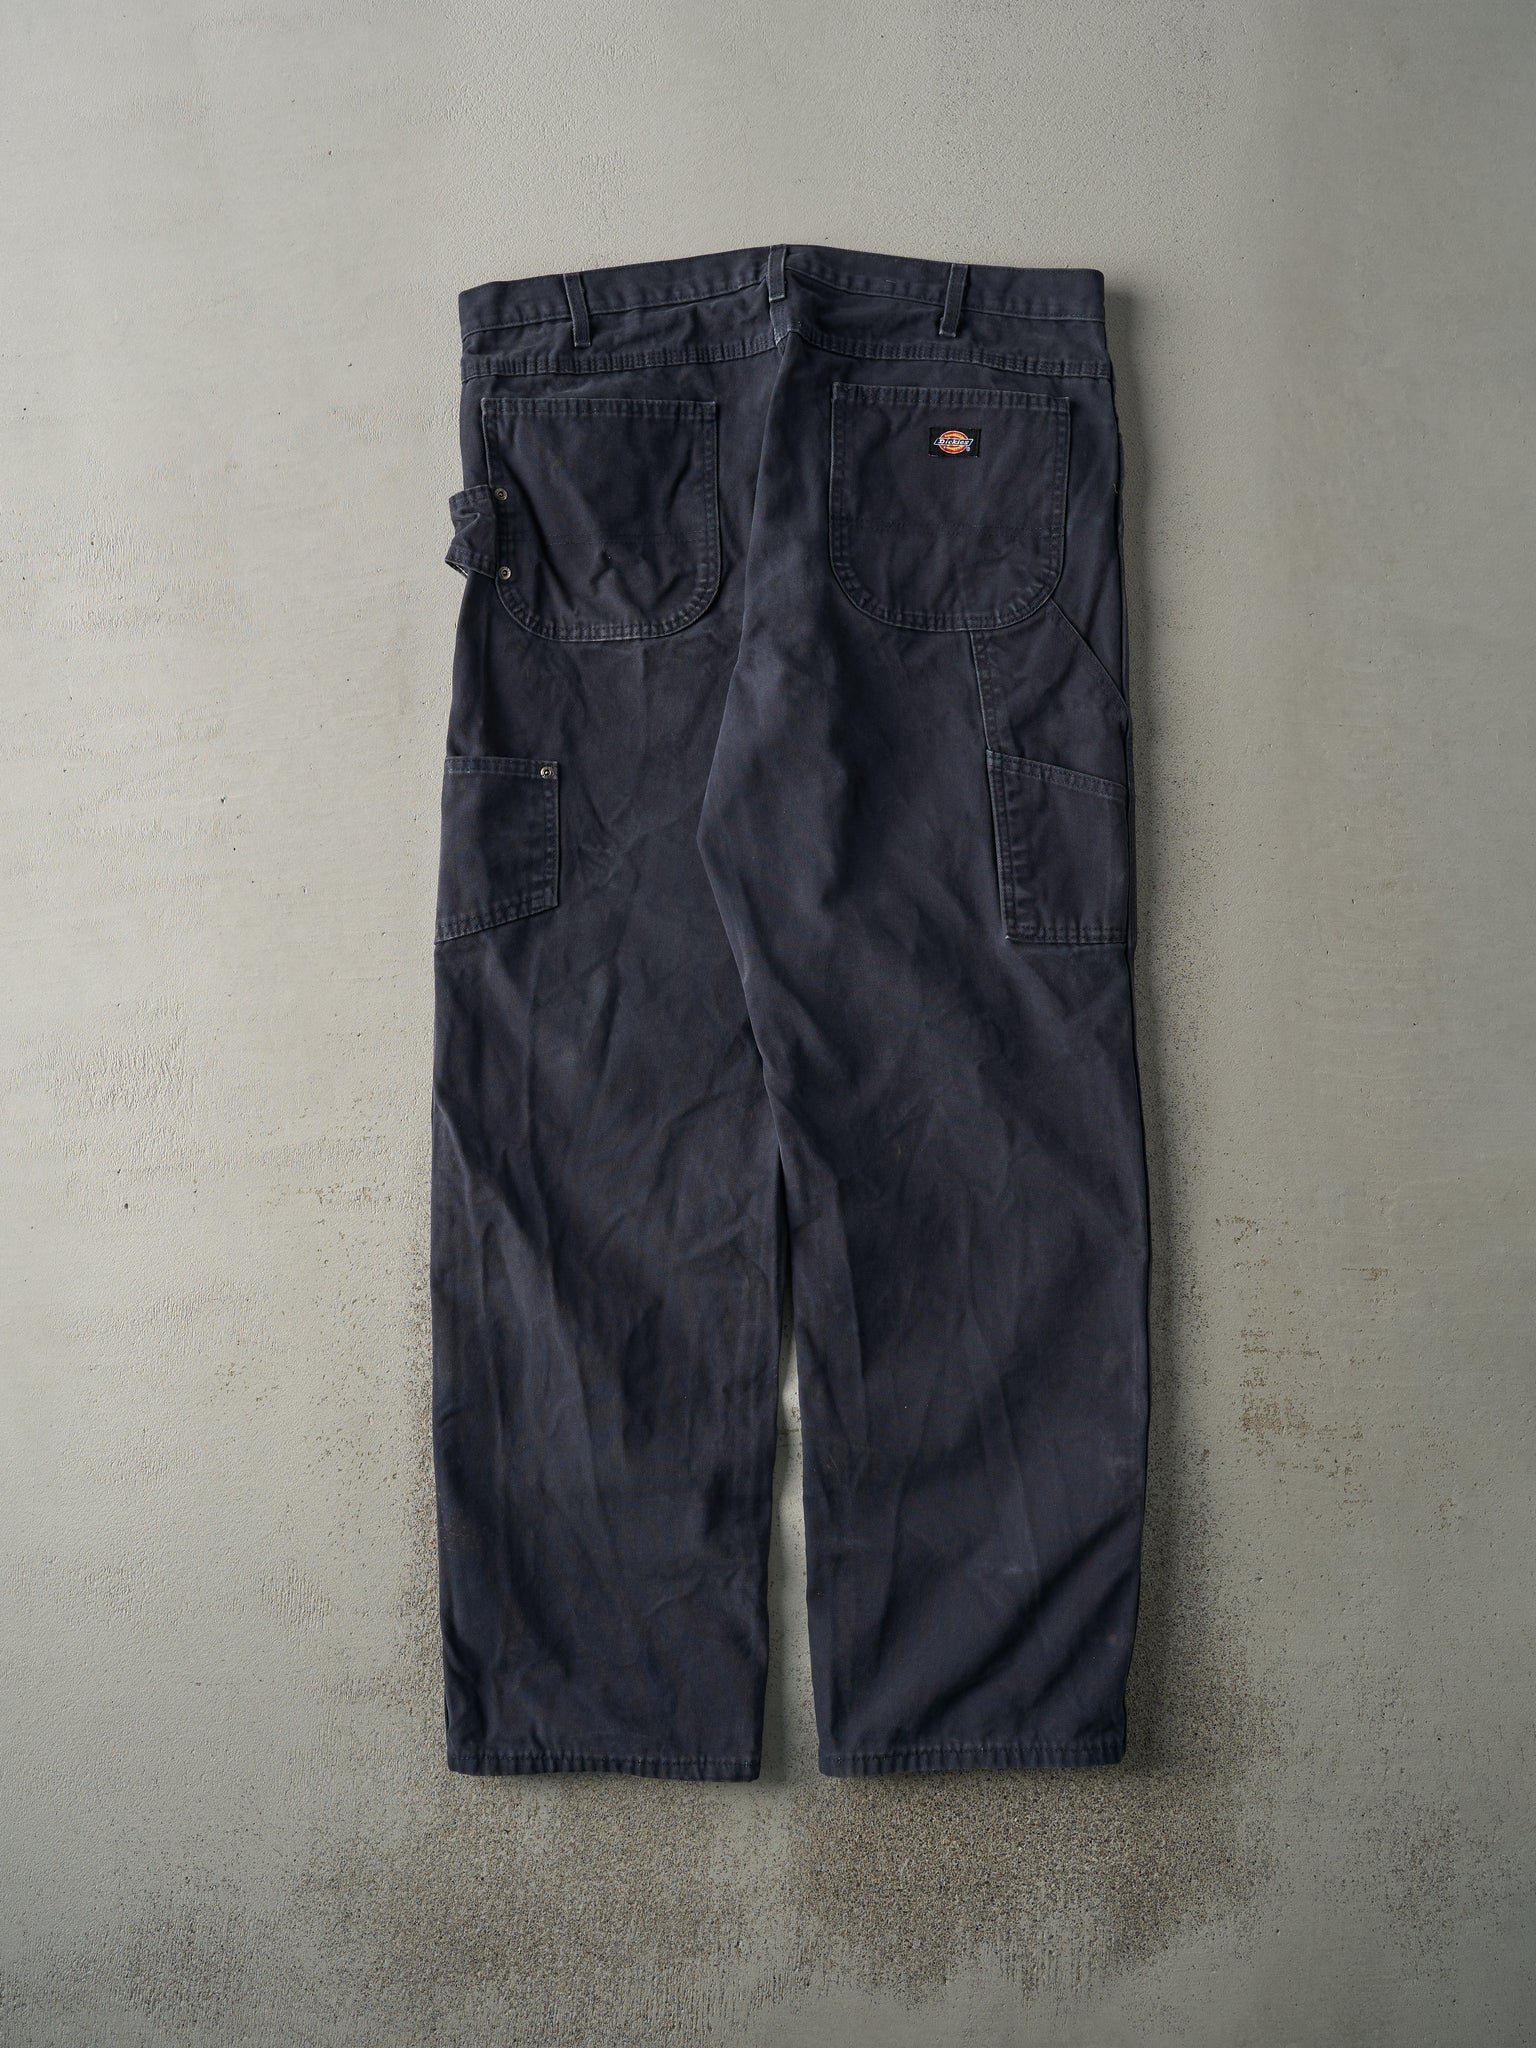 Vintage 90s Navy Blue Dickies Carpenter Pants (39x32.5)